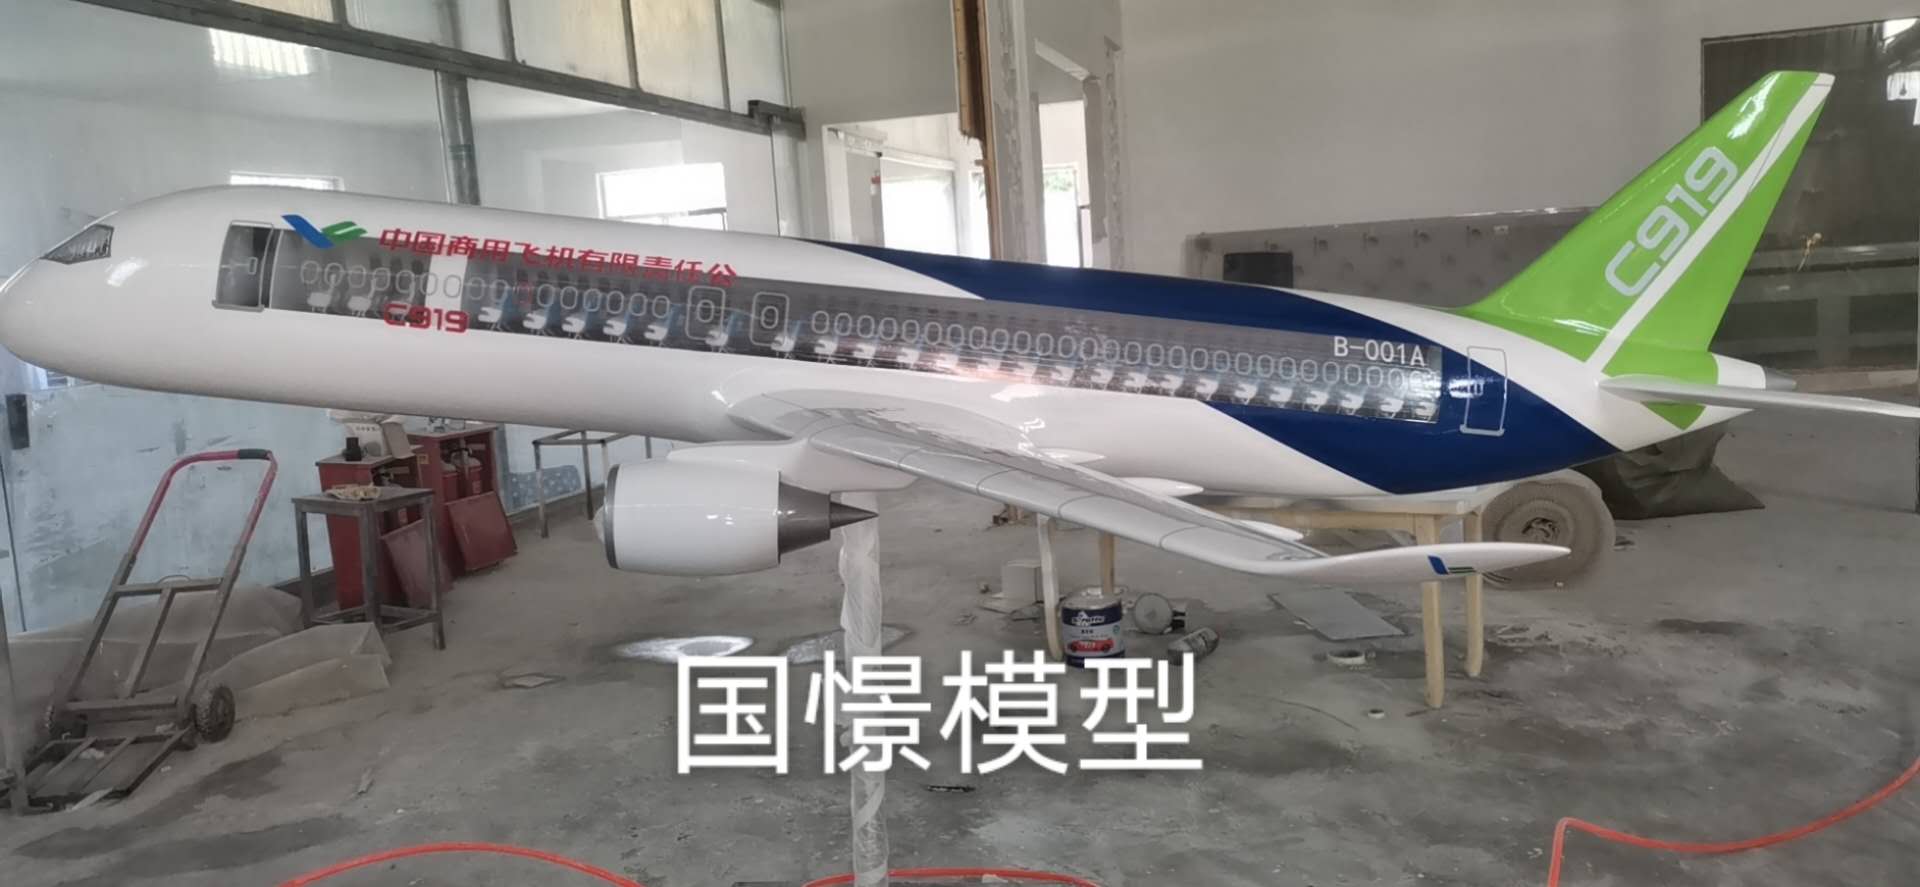 鱼台县飞机模型